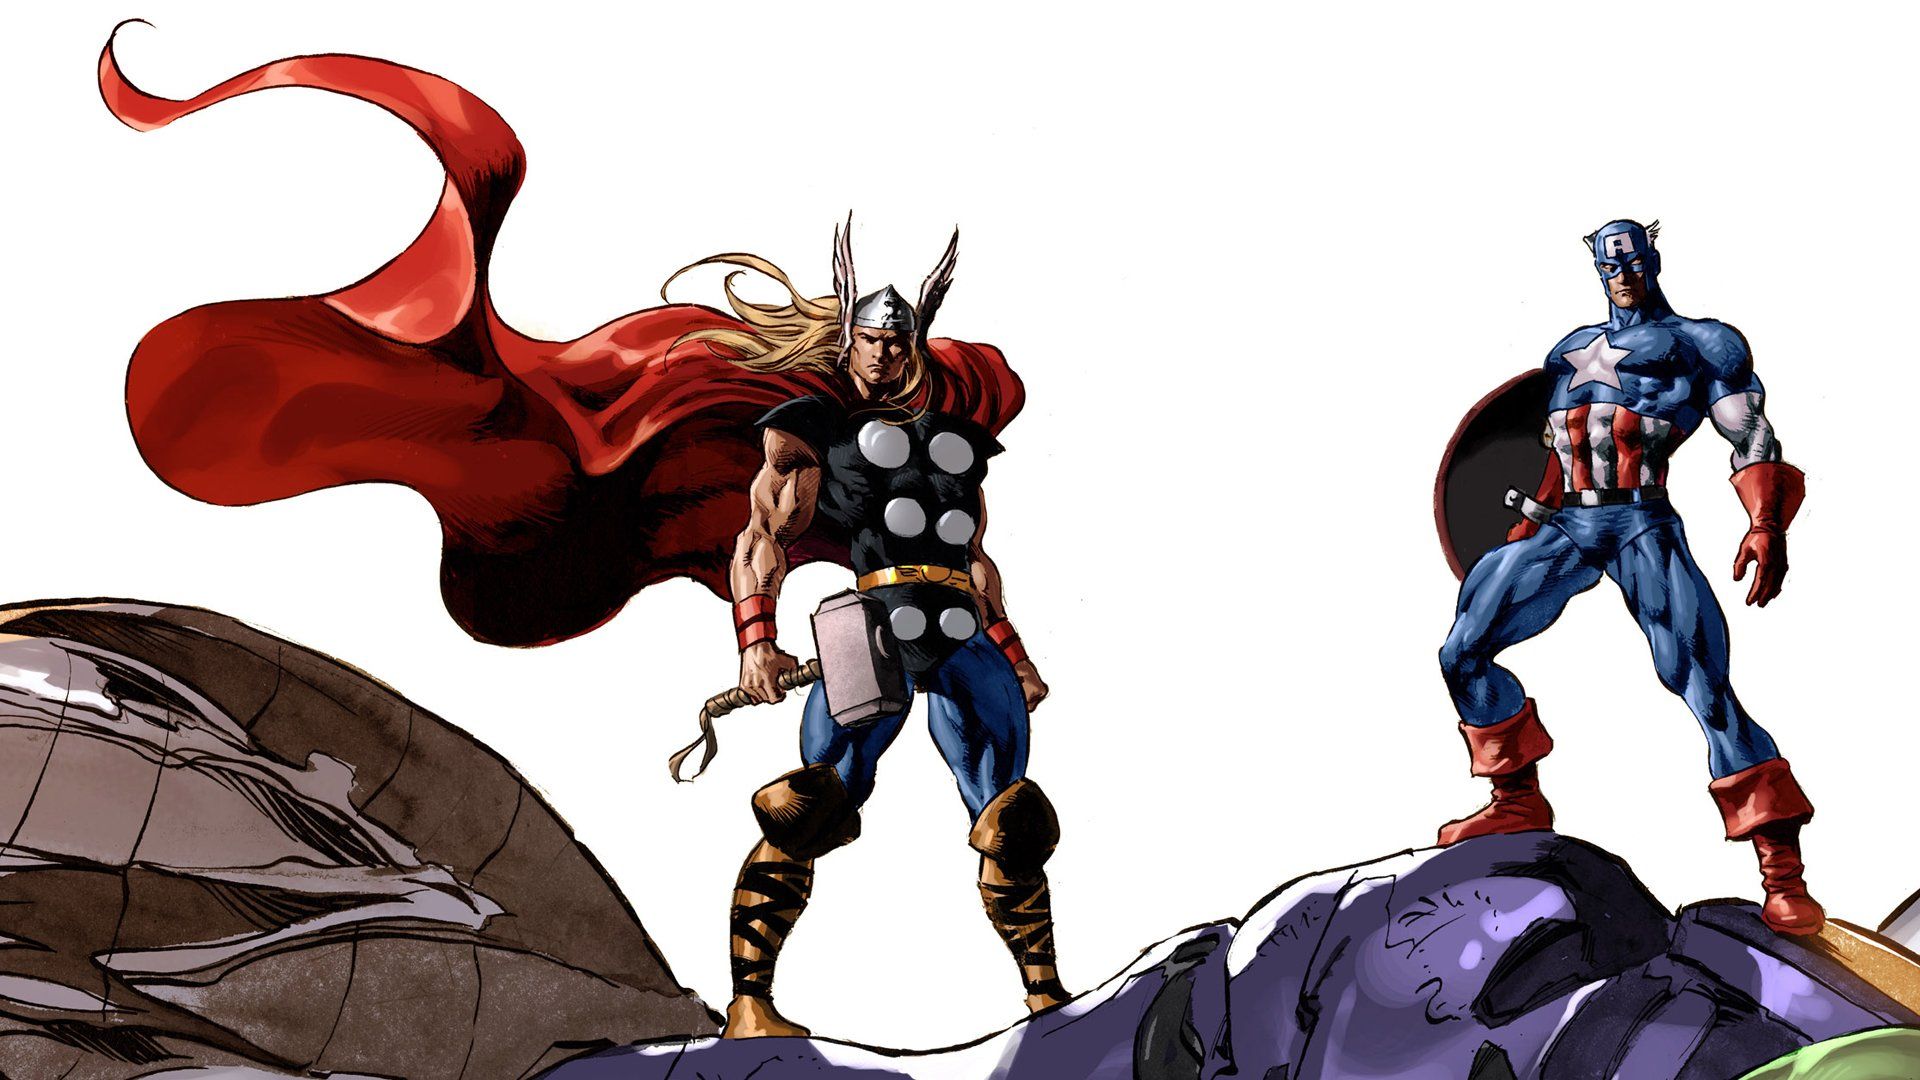 Comics Thor Captain America Marvel Comics wallpaper | 1920x1080 ...